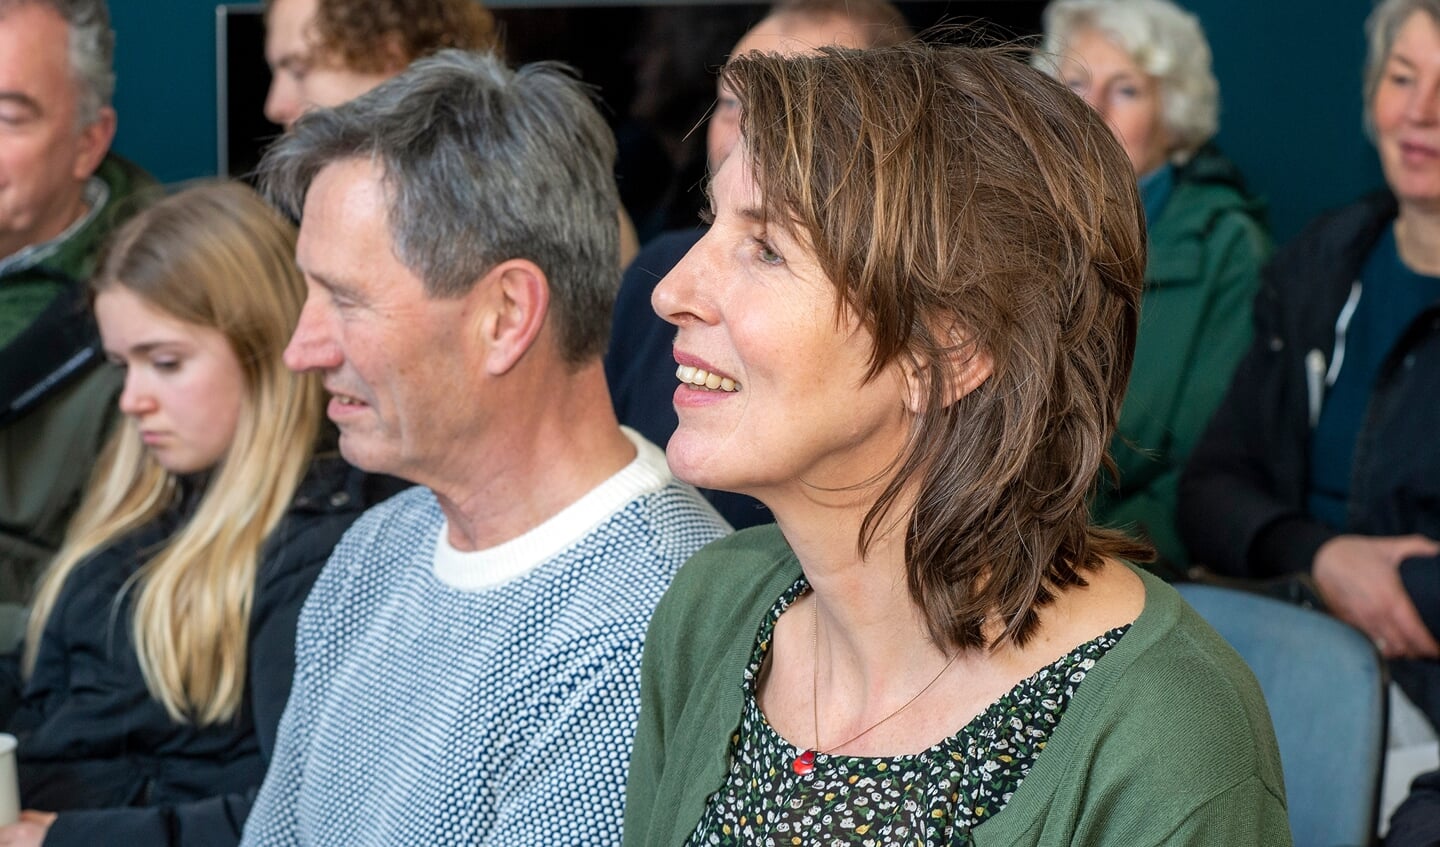 Het optreden met onder andere Amersfoorter Thjum Arts (blauwe trui) die in 2021 zowel de jury- als de publieksprijs tijdens het Cameretten Festival 2021 won.